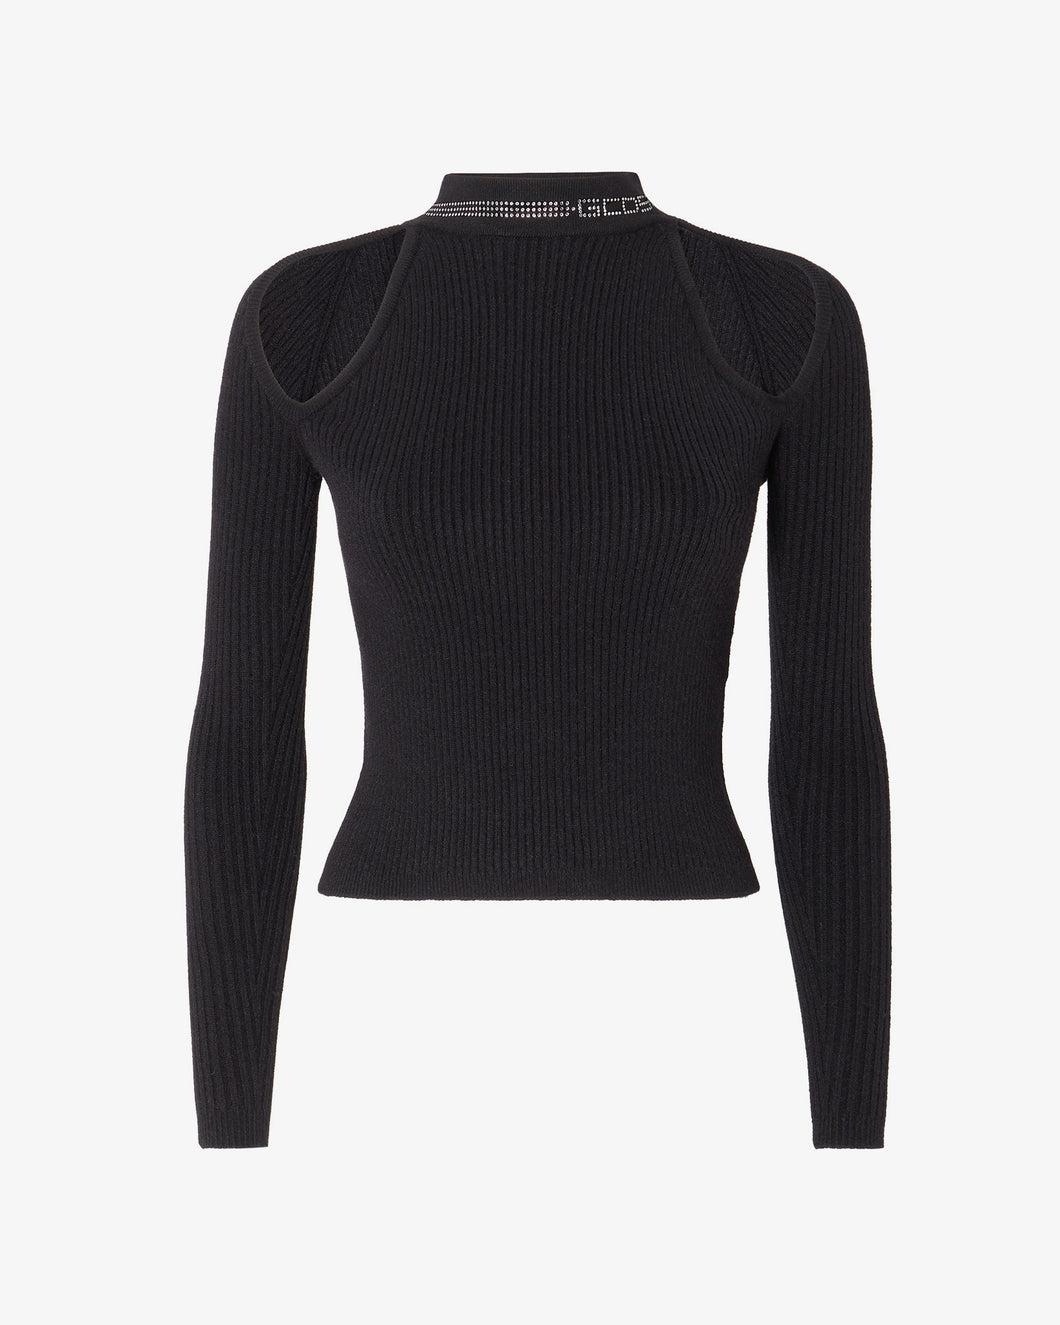 Bling Sweater | Women Knitwear Black | GCDS®